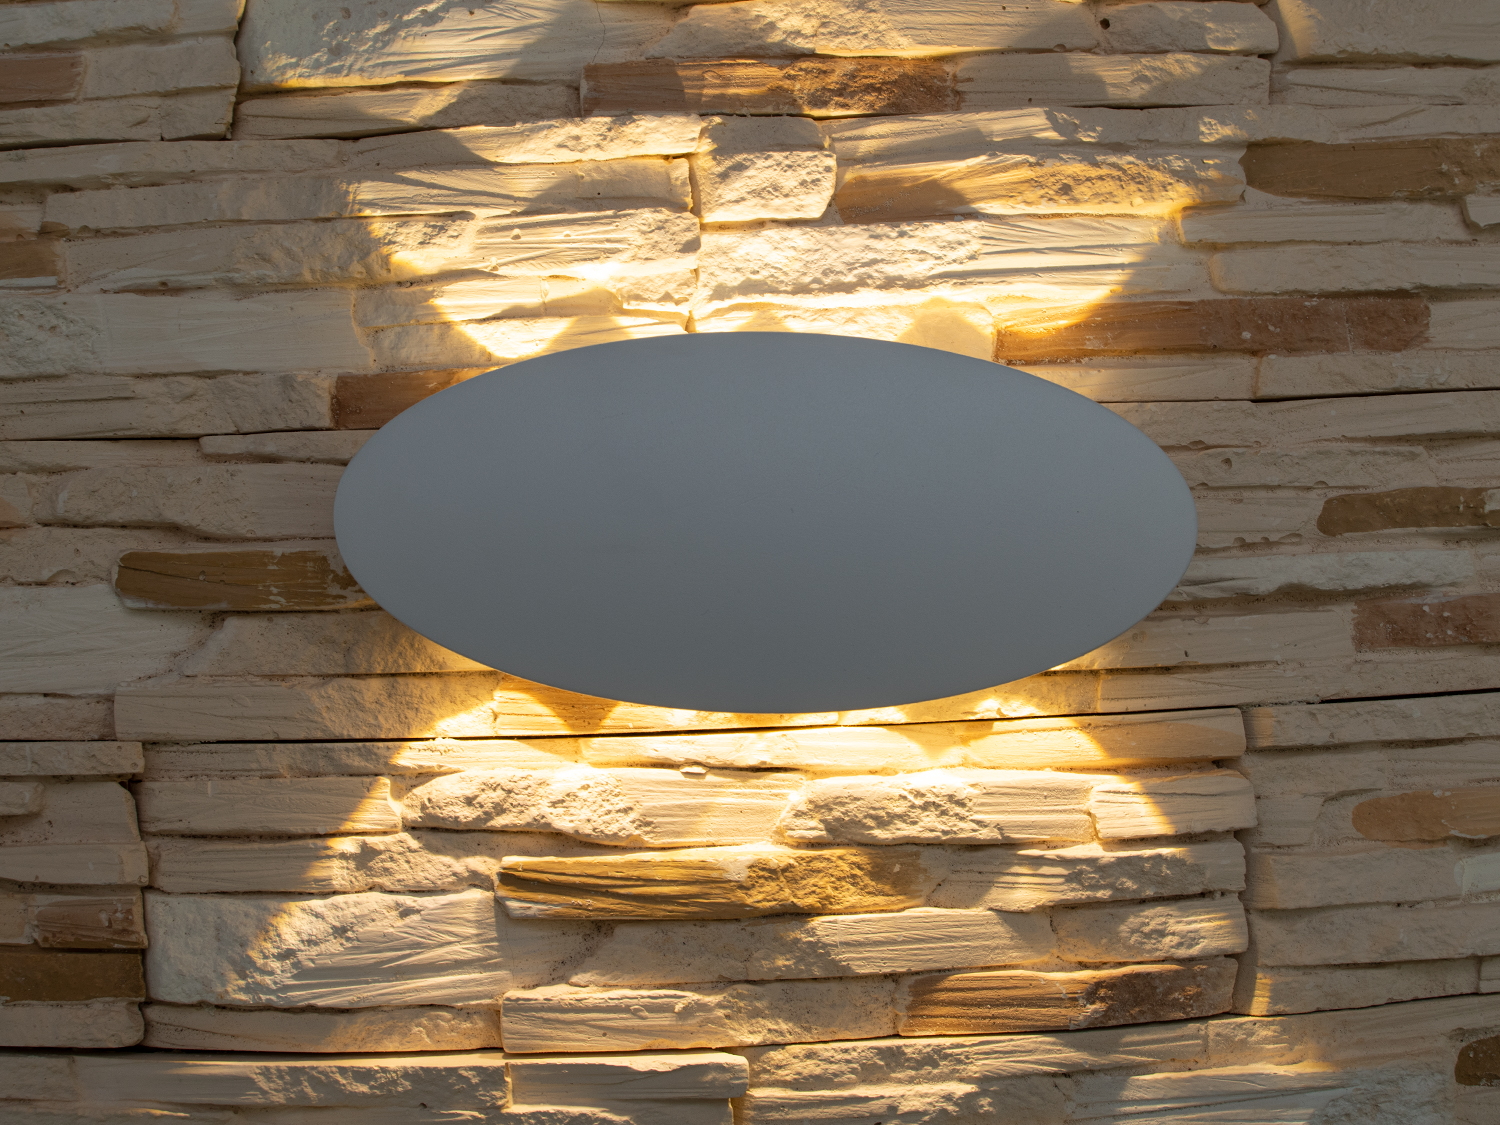 Фасадний світильник володіє малими розмірами та високою світловіддачею. Кут розкриття променя 60 °. Не виділяється на фасаді вдень, при цьому здатний повністю змінити вигляд будівлі вночі. На відміну від своїх попередників світлодіодні світильники для архітектурного підсвічування практично не виступають від стіни, а значить, світло практично повністю поширюється в площині стіни. Не потрапляє на віконні укоси, і, відповідно, не призводить до світлового забруднення приміщень усередині будівлі як звичайні вуличні ліхтарі.
Простір перед світильником м'яко освітлюється світлом, що відбивається від поверхні стіни. Такі світильники не створюють дискомфорту для очей у темну пору доби.

Також може бути використаний у приміщенні. У сучасному інтер'єрі такий світильник створить невимушене бічне освітлення і стане стильною заміною звичайних бра.